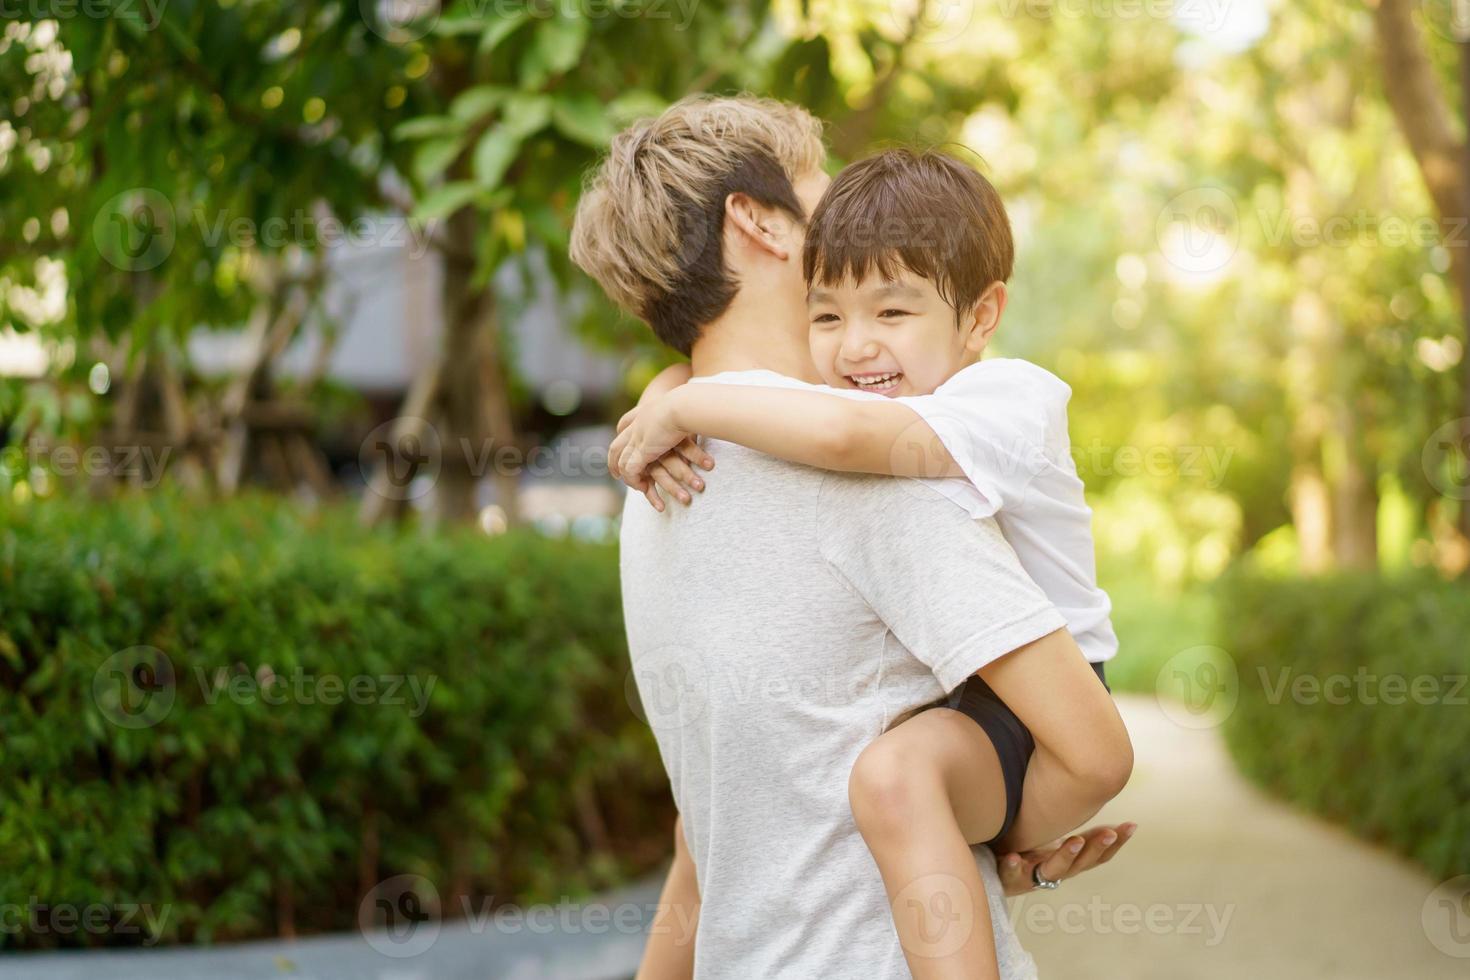 menino asiático feliz gosta de brincar e passear no parque com o papai de perto, menino asiático tem um lindo sorriso enquanto olha para seu pai. retrato de menino no parque e playground. foto